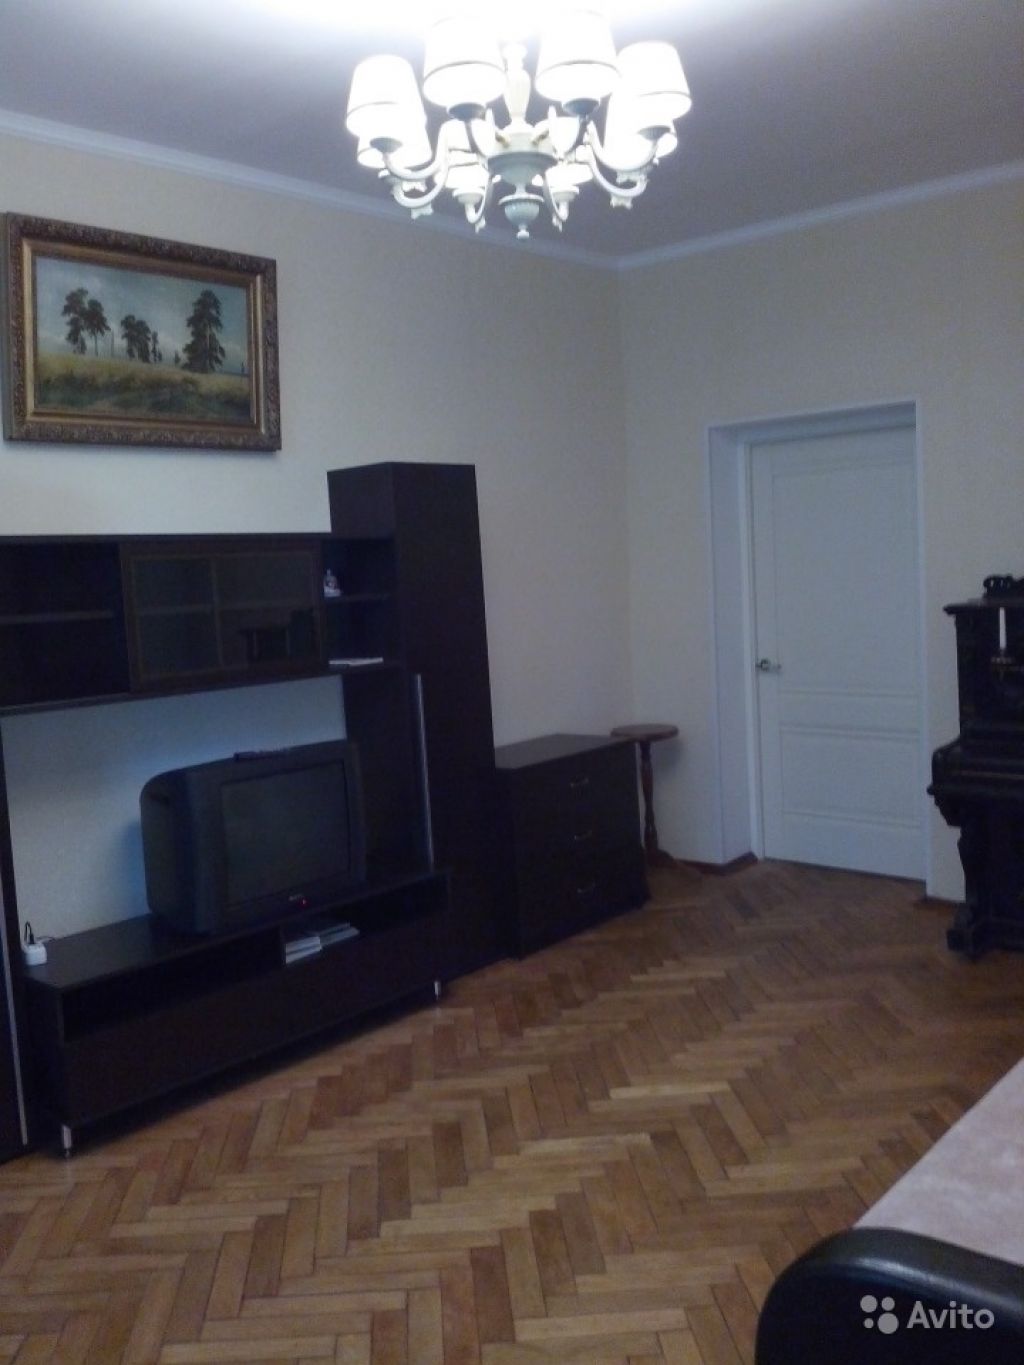 Сдам квартиру 3-к квартира 67 м² на 2 этаже 8-этажного кирпичного дома в Москве. Фото 1